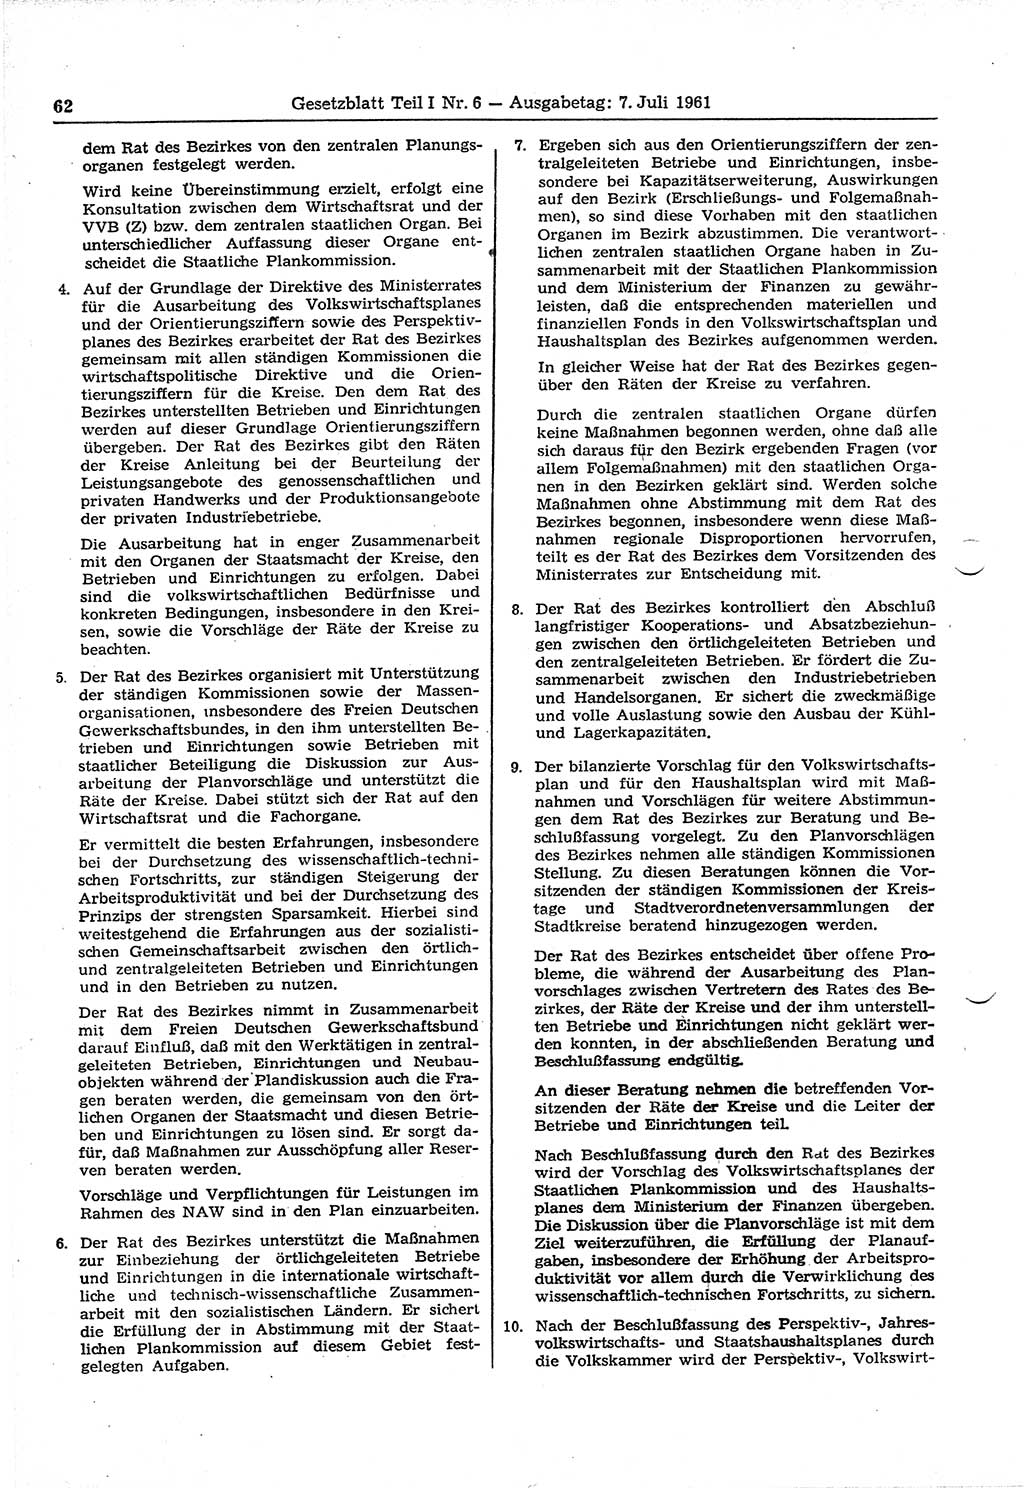 Gesetzblatt (GBl.) der Deutschen Demokratischen Republik (DDR) Teil Ⅰ 1961, Seite 62 (GBl. DDR Ⅰ 1961, S. 62)